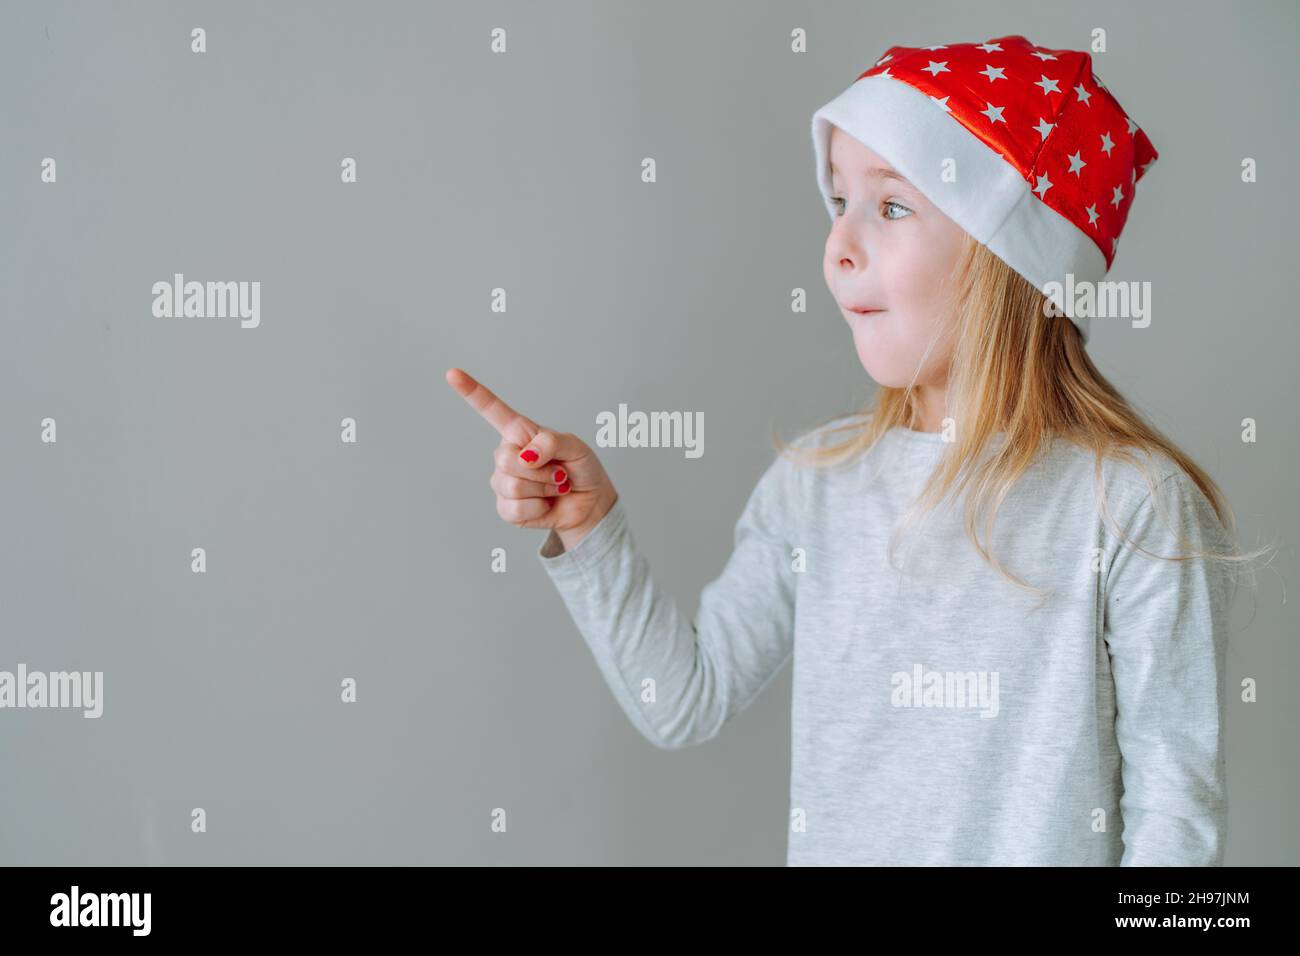 Une jeune fille portant un chapeau de père noël rouge pointe son doigt vers un espace vide à côté d'elle contre le mur gris neutre.CopySpace. Banque D'Images